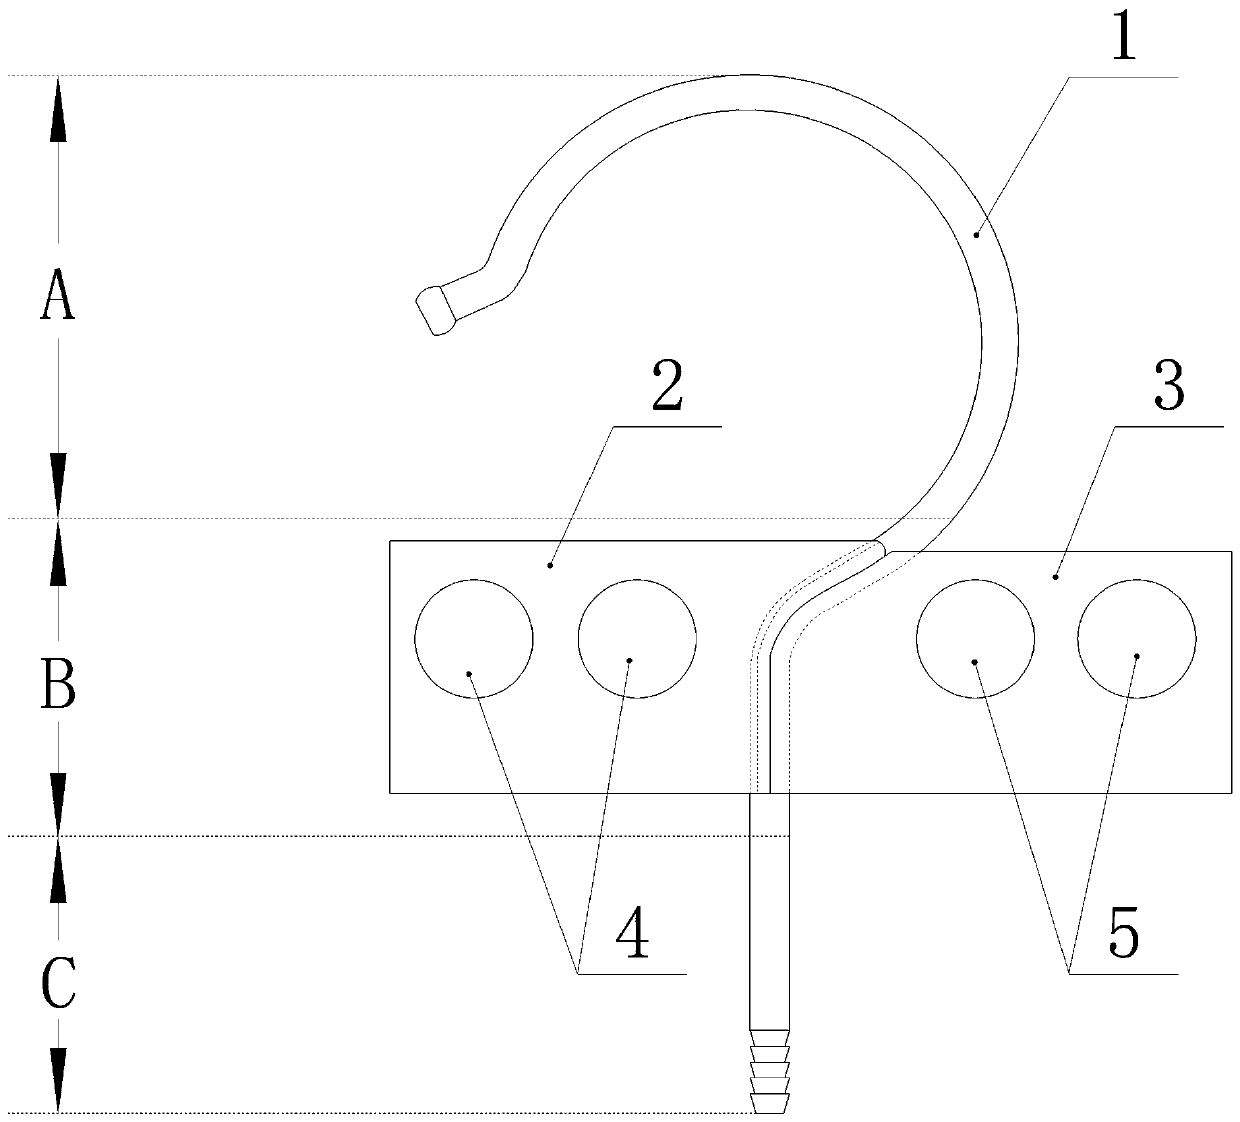 A hanger hook fixture